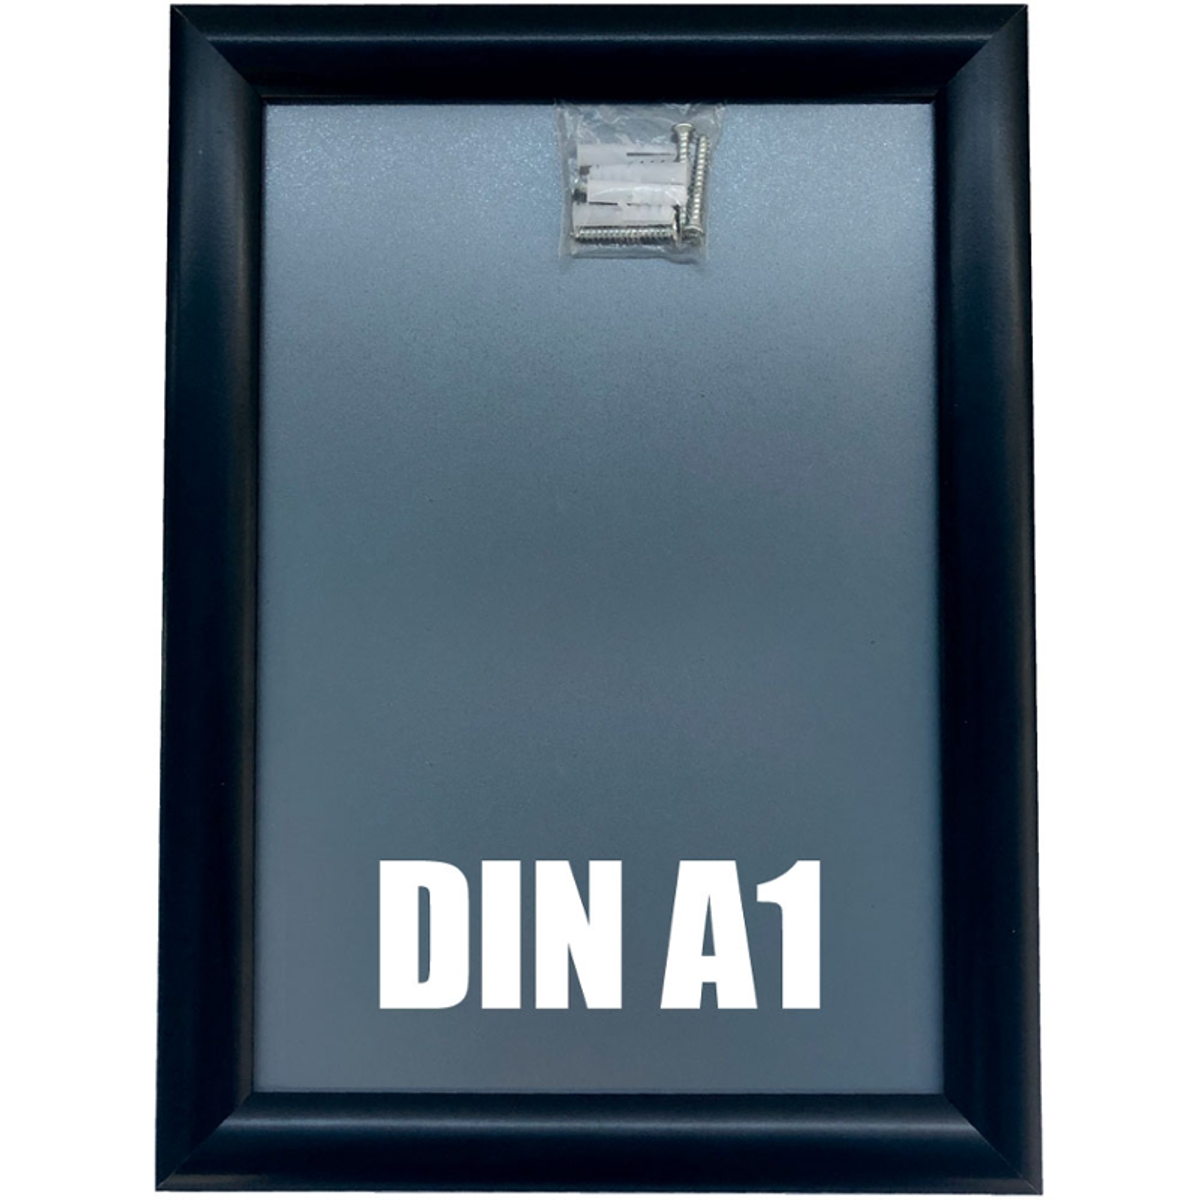 DIN A1 | Alu Klapprahmen schwarz, Wechselrahmen, 624 x 872 mm